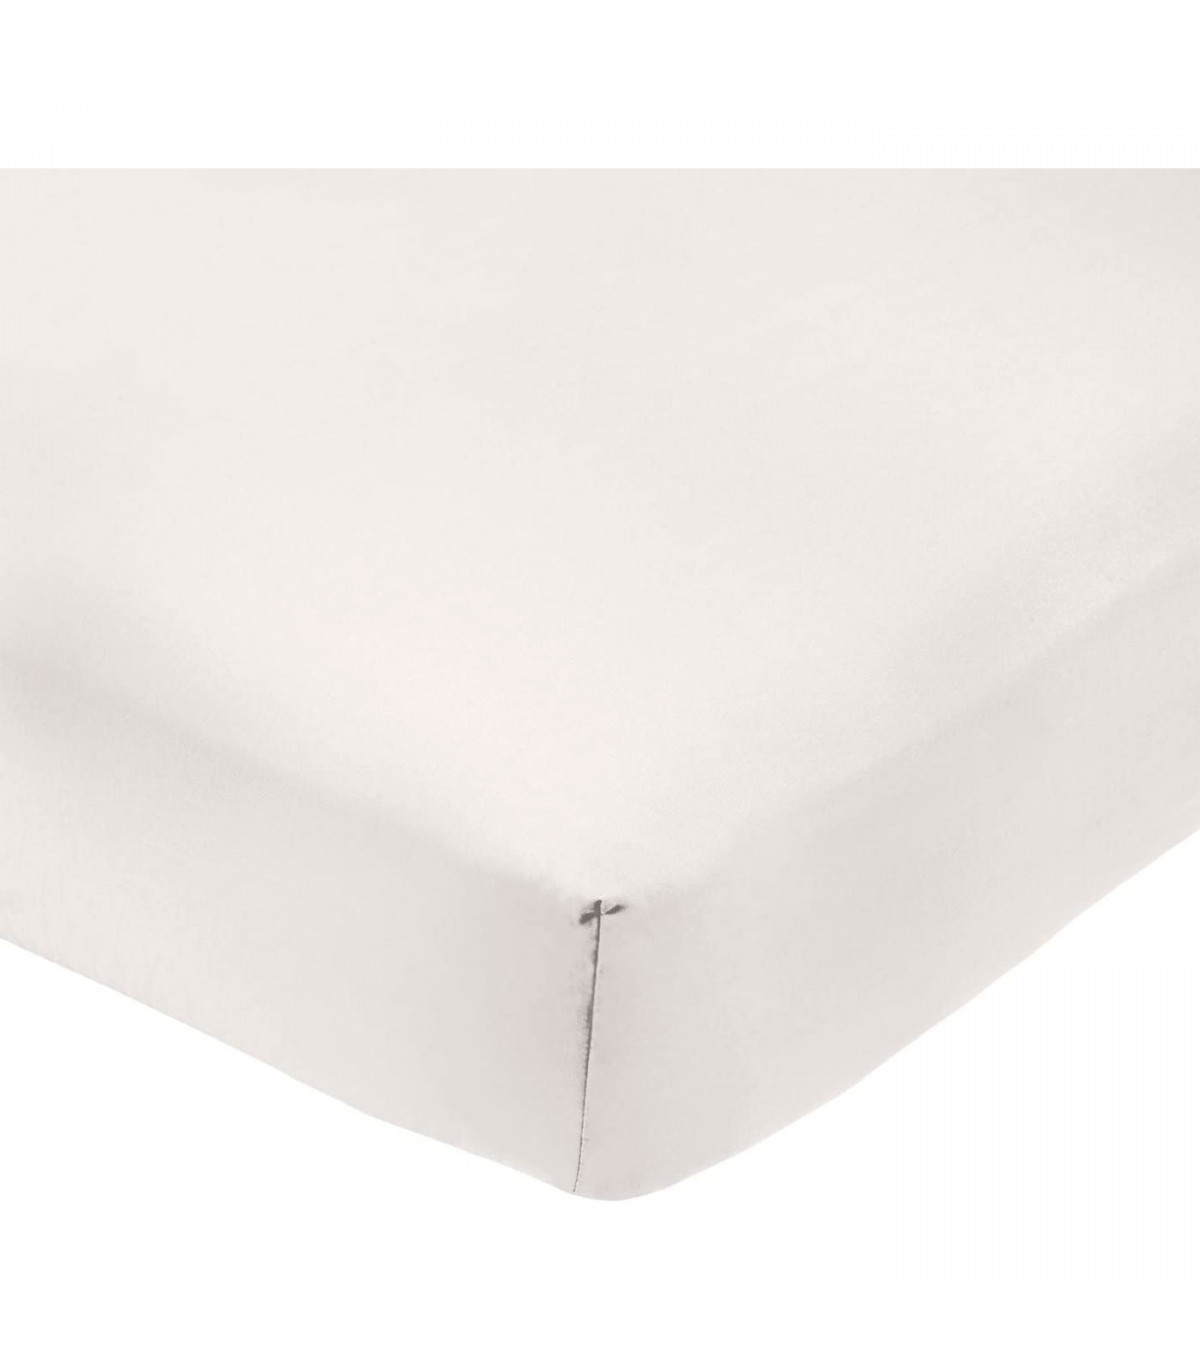 Tradineur Sábana bajera ajustable de algodón para cama de 135, especial pieles sensibles, suave y transpirable (Blanco, 135 x